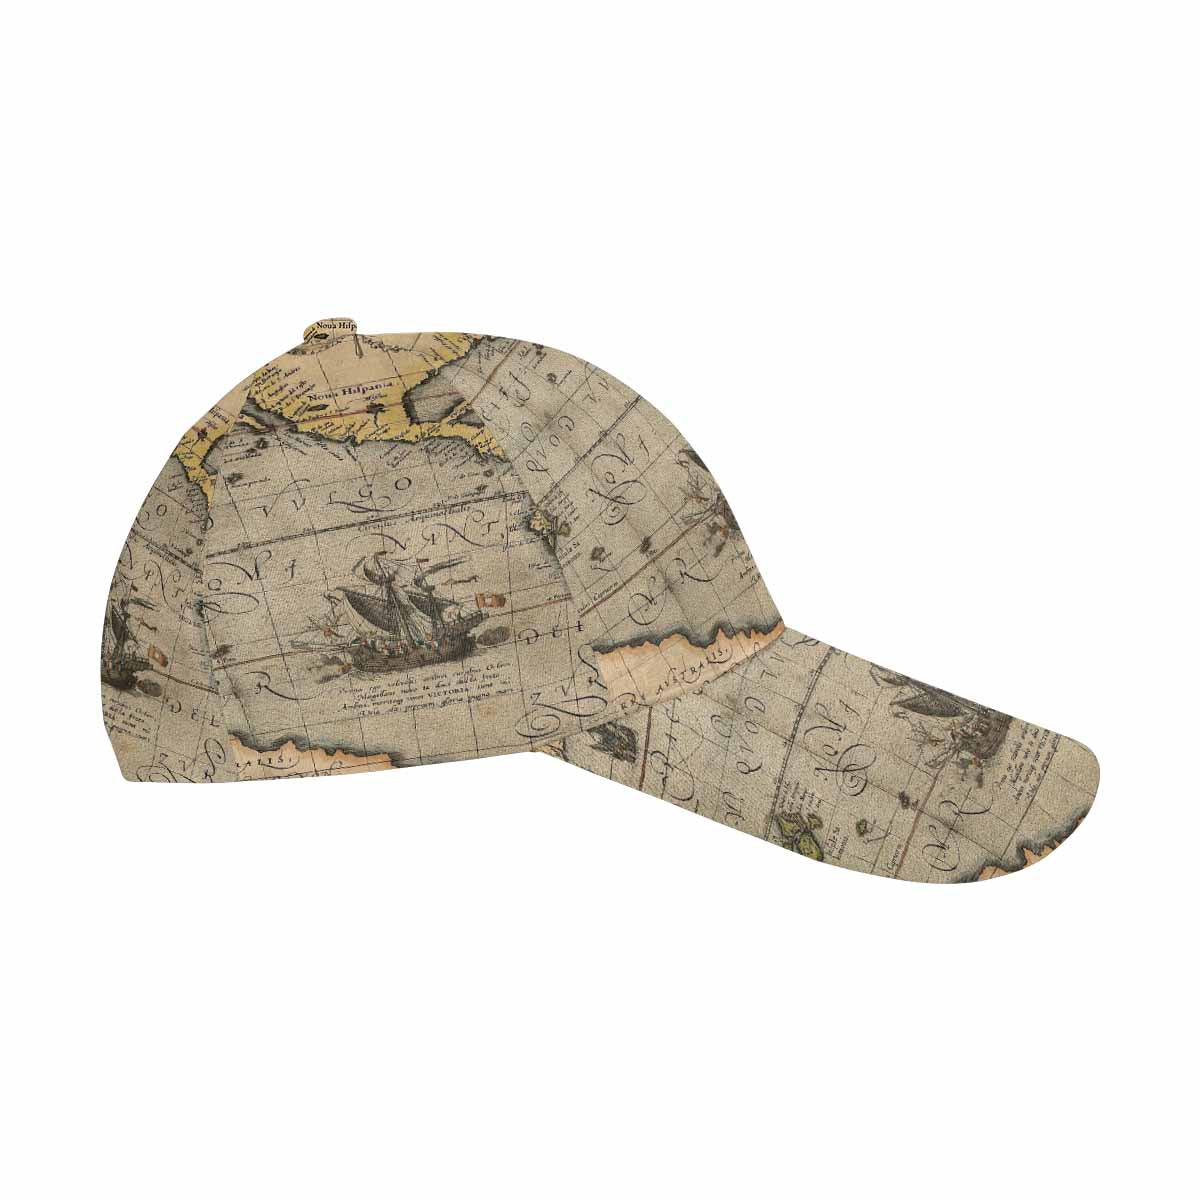 Antique Map design dad cap, trucker hat, Design 46